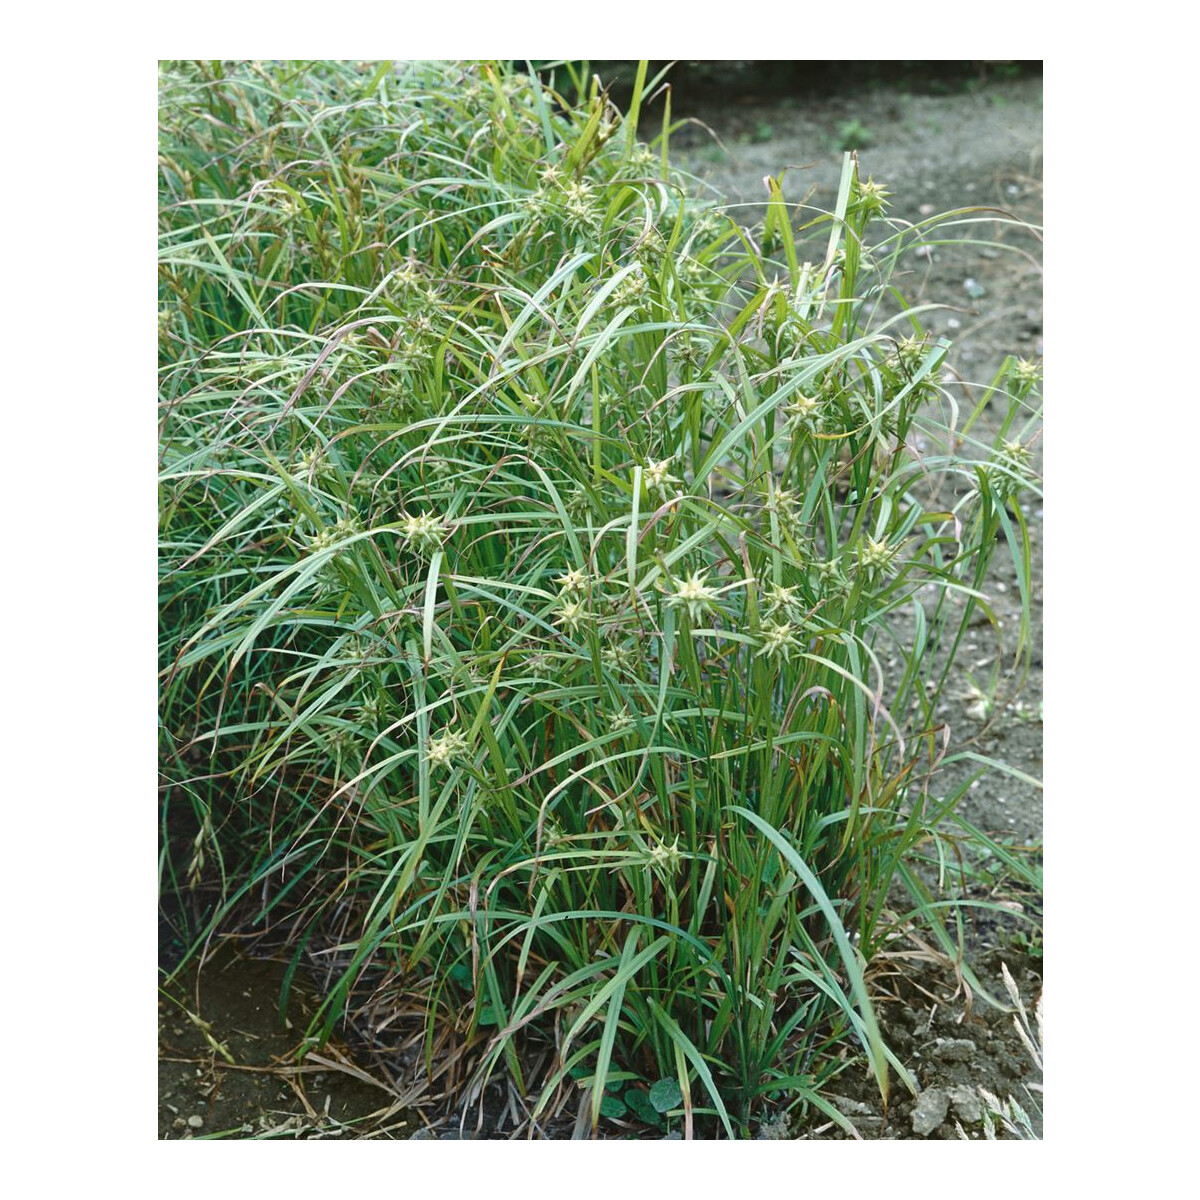 Carex grayi C 2